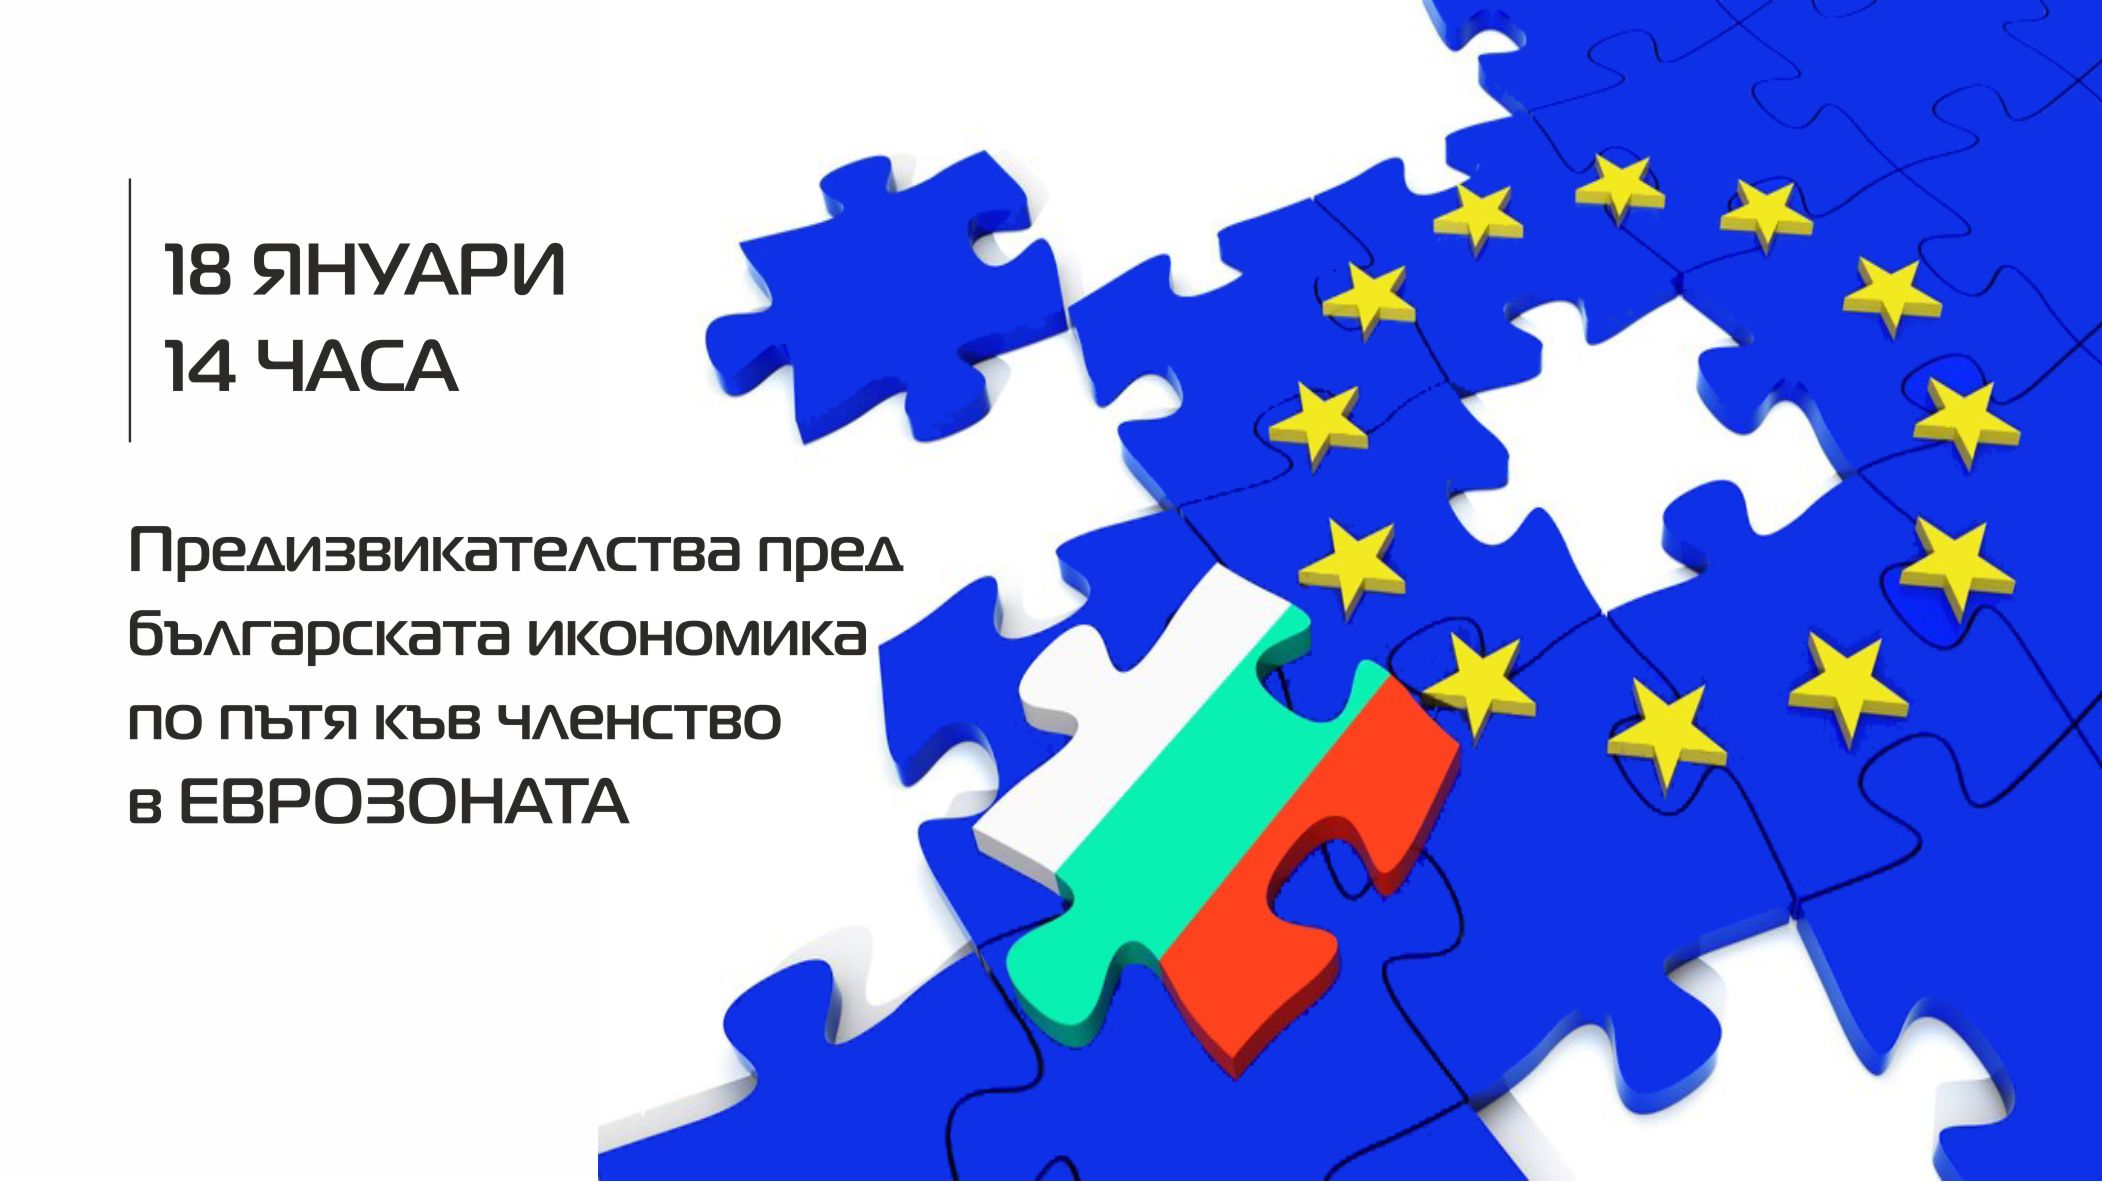 Предизвикателства пред българската икономика по пътя към членство в еврозоната